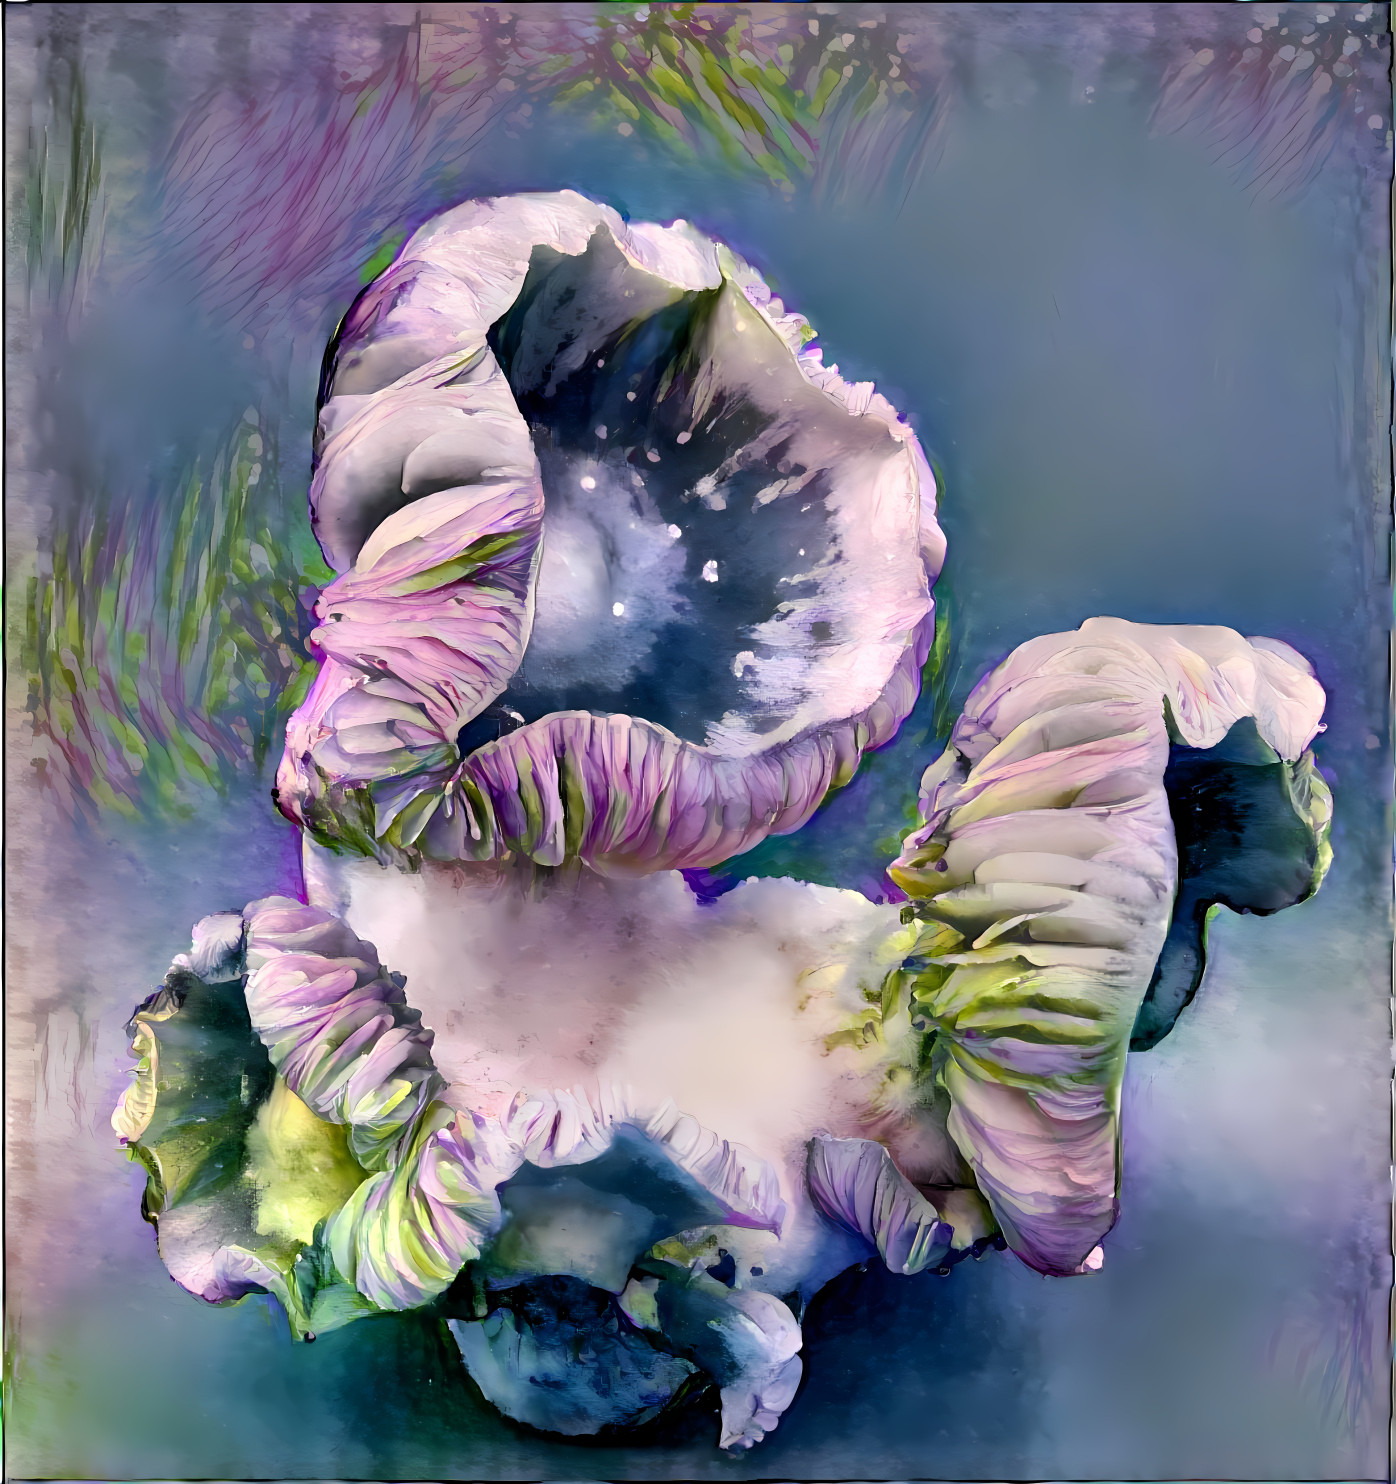 Flower meets mushroom 